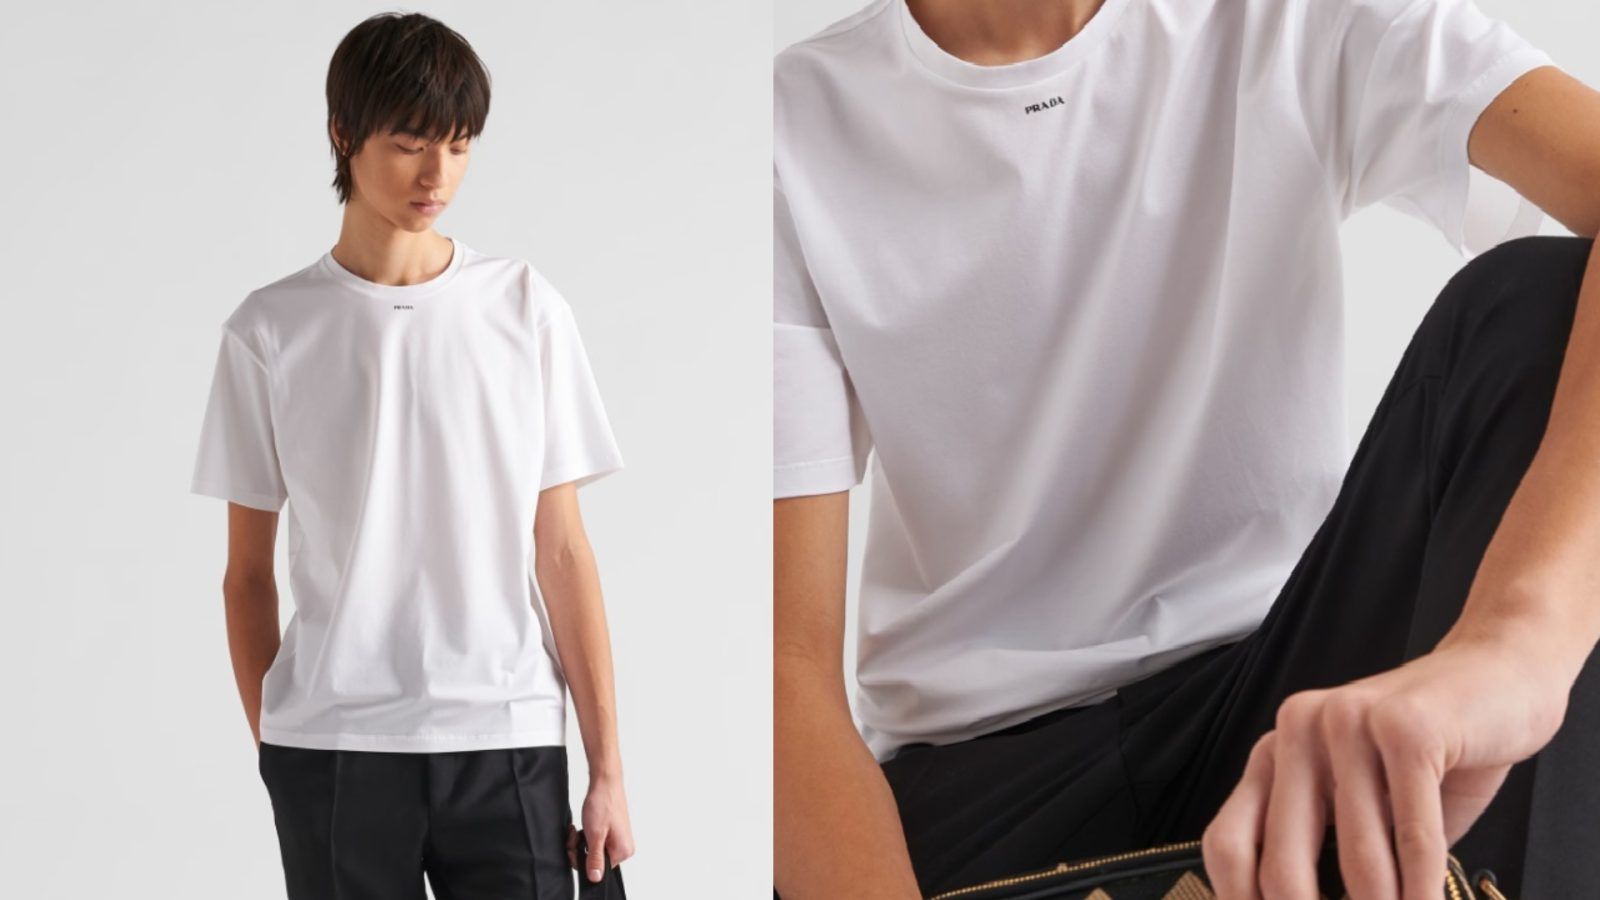 Louis Vuitton Supreme Bear Cotton T-shirt. 2 colours available